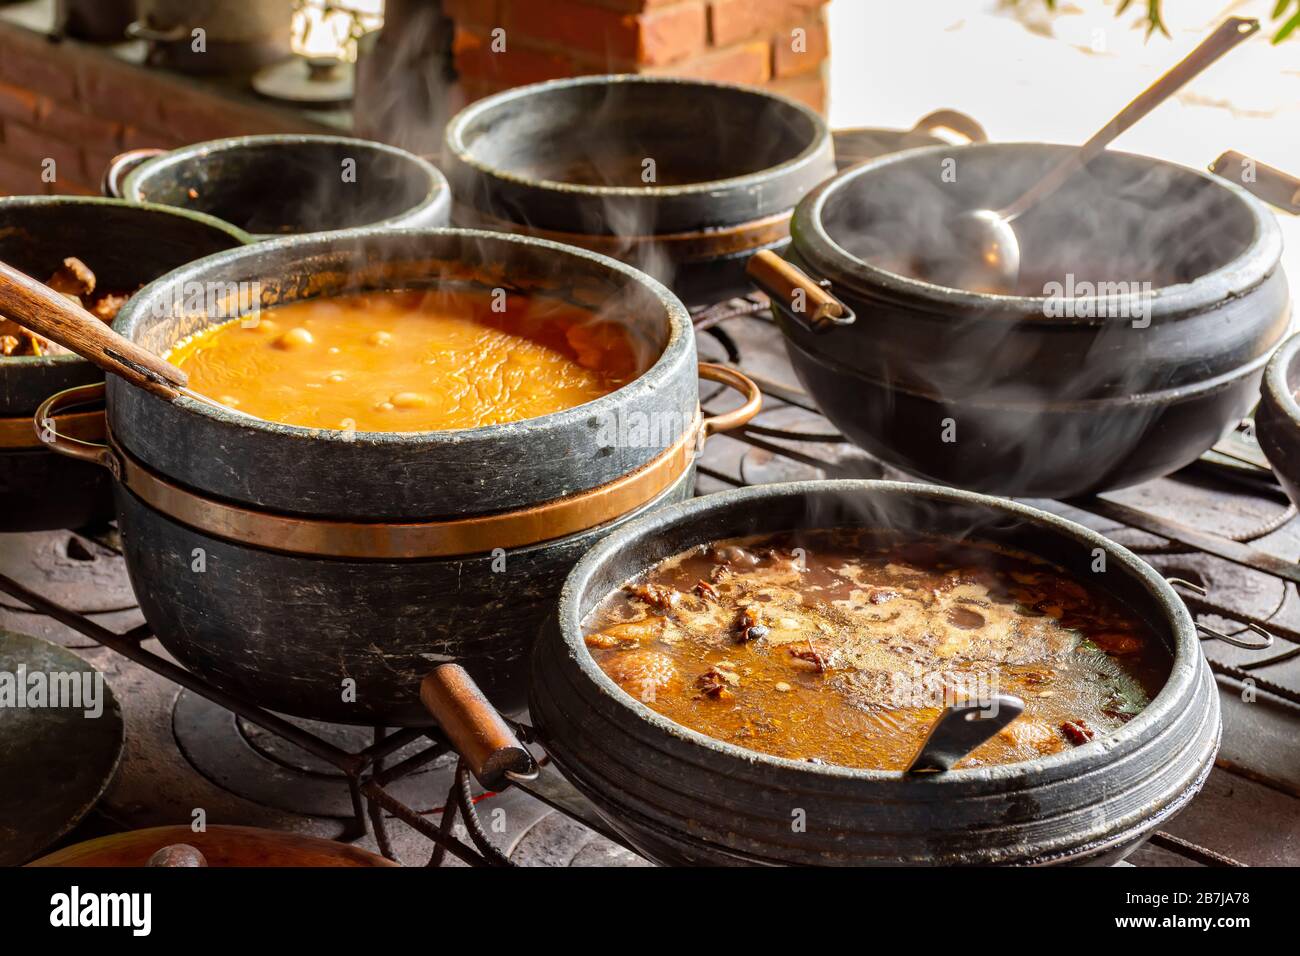 Des aliments typiques brésiliens placés dans des pots d'argile et sur une plaque métallique d'un poêle à bois traditionnel Banque D'Images